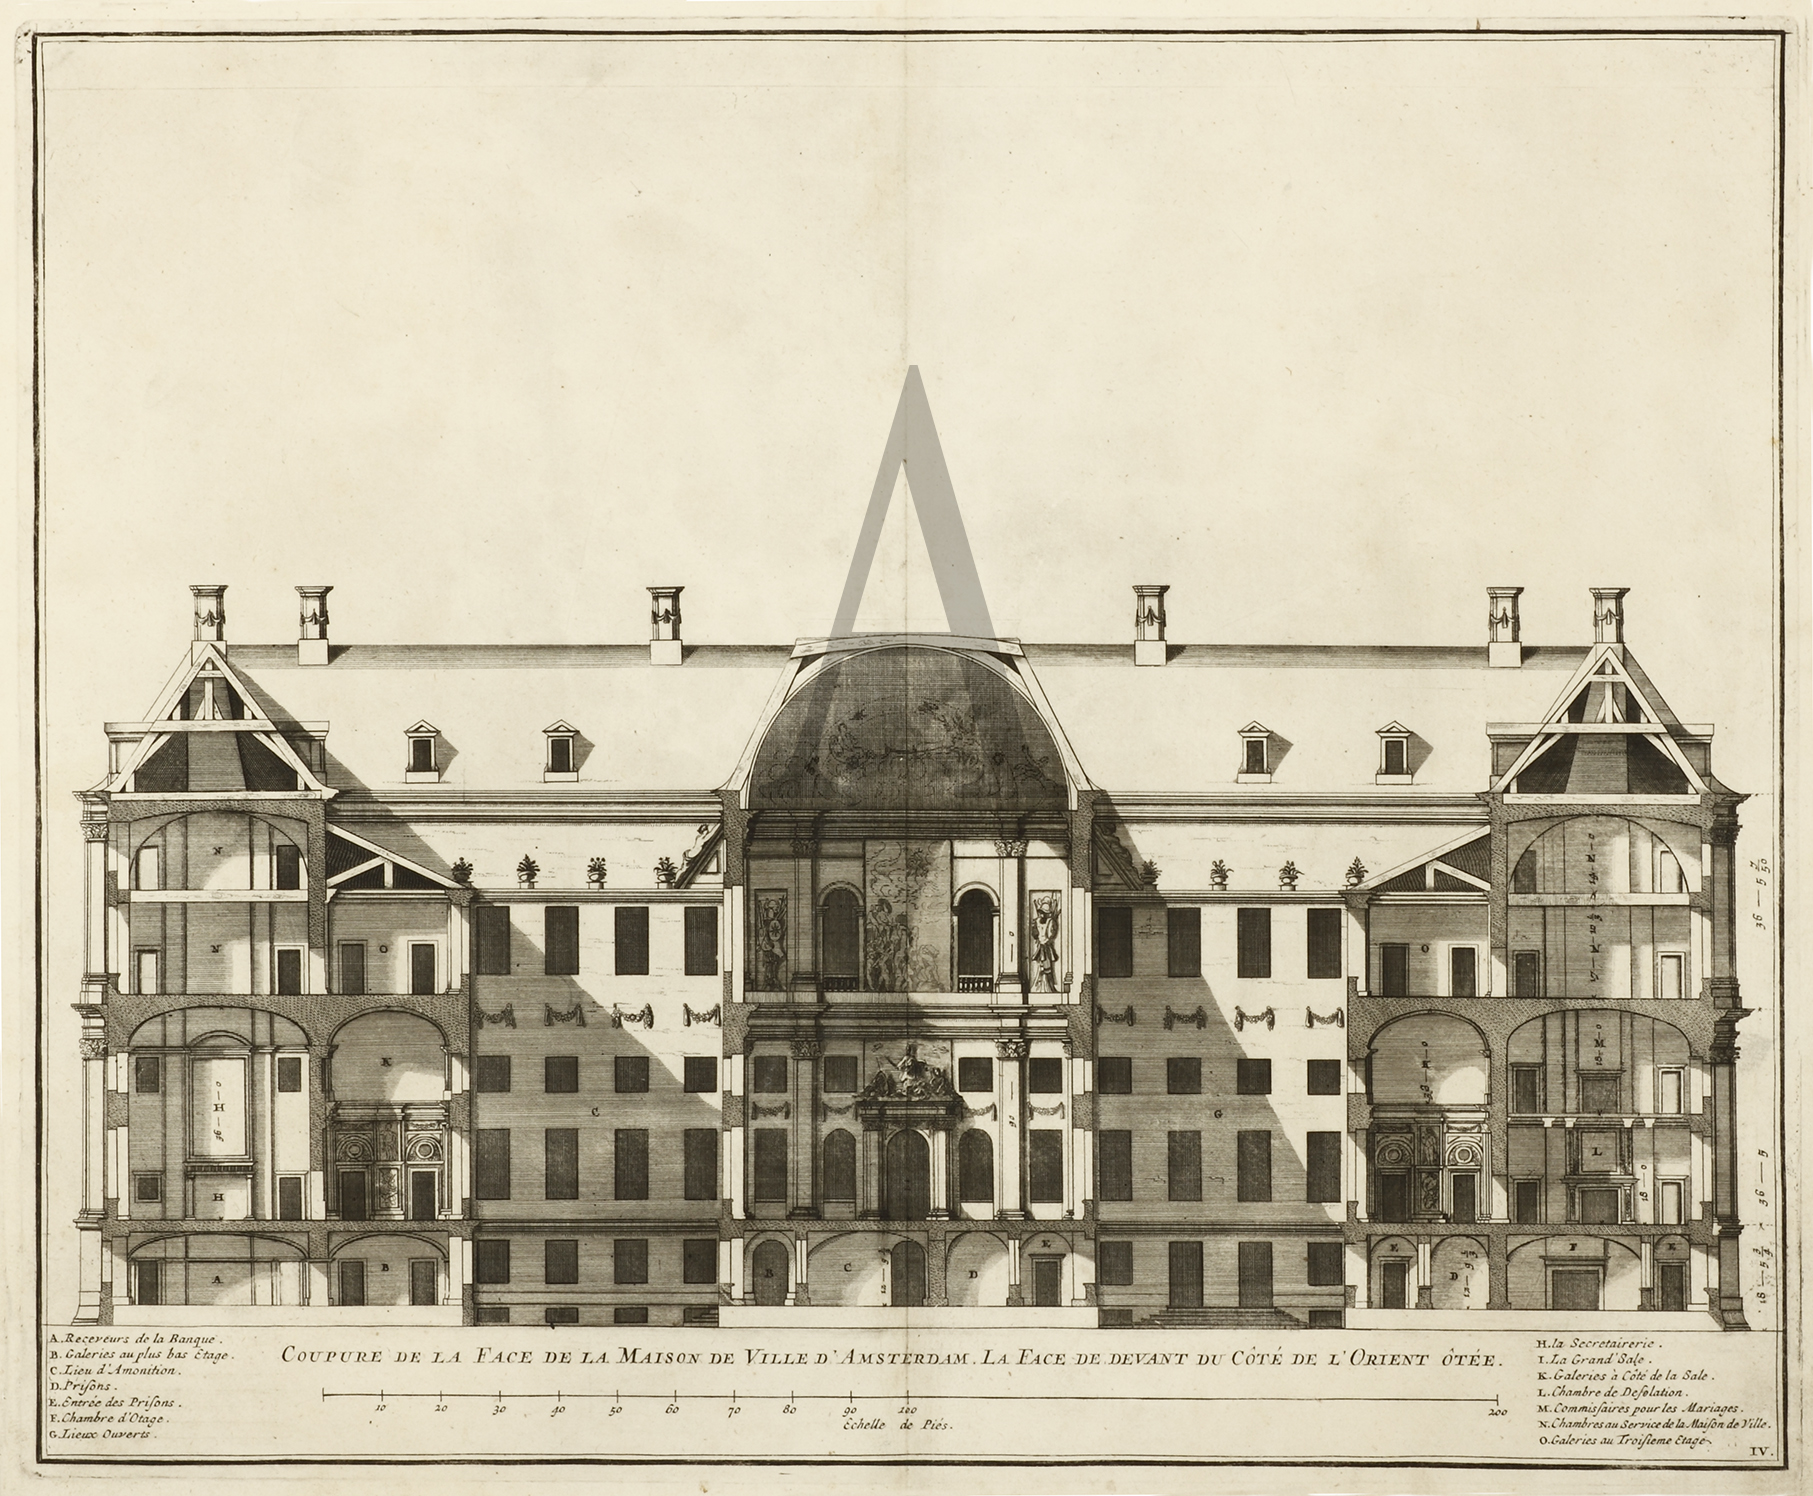 Coupure de la Face de la Maison de Ville D'Amsterdam. La Face de devant de Cote de L'Orient Otee. - Antique Print from 1661